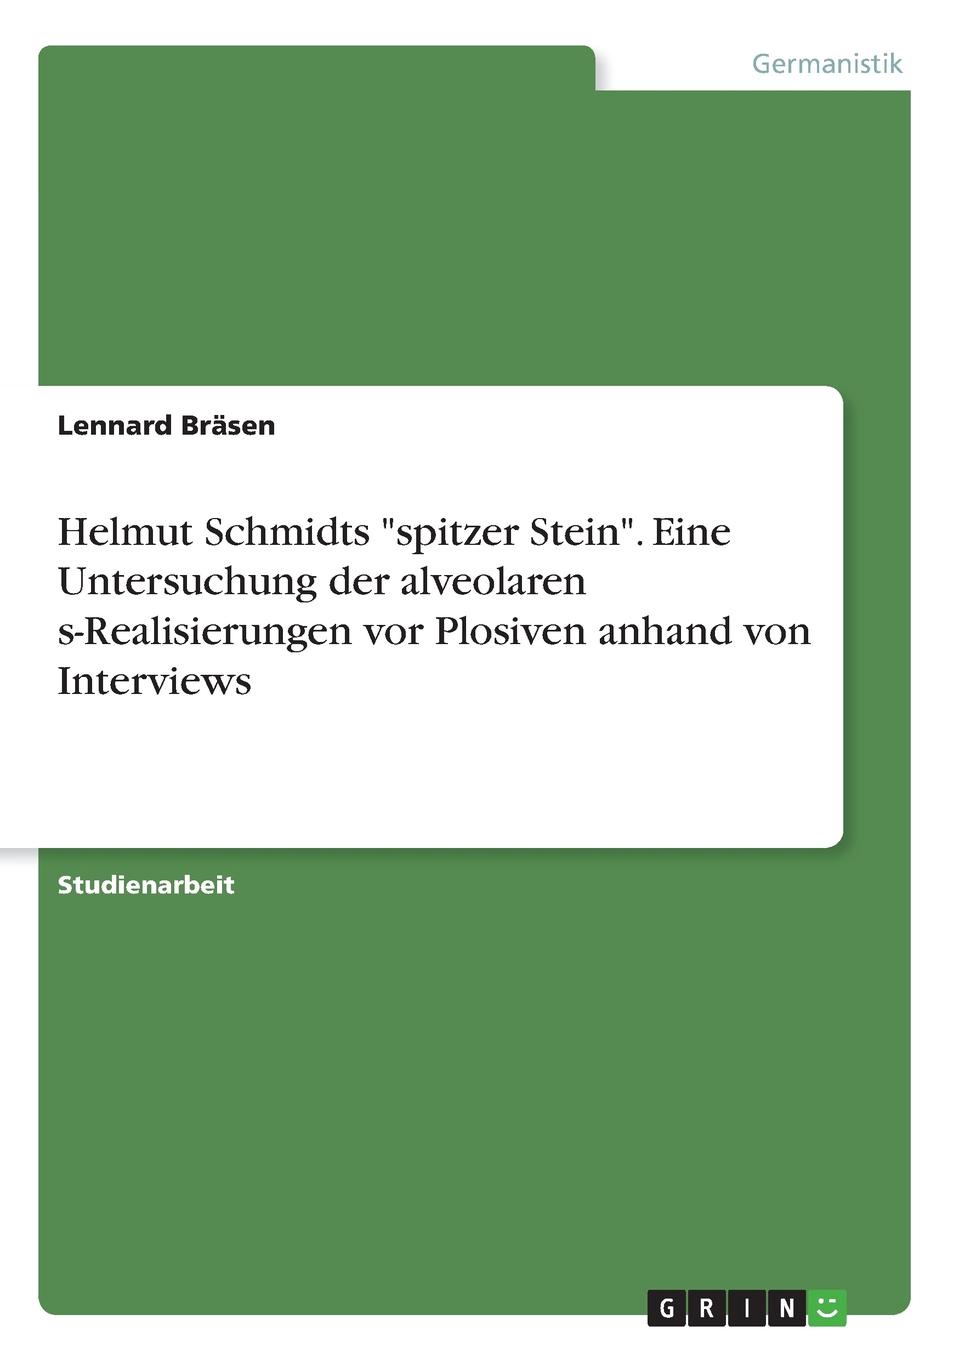 фото Helmut Schmidts "spitzer Stein". Eine Untersuchung der alveolaren s-Realisierungen vor Plosiven anhand von Interviews